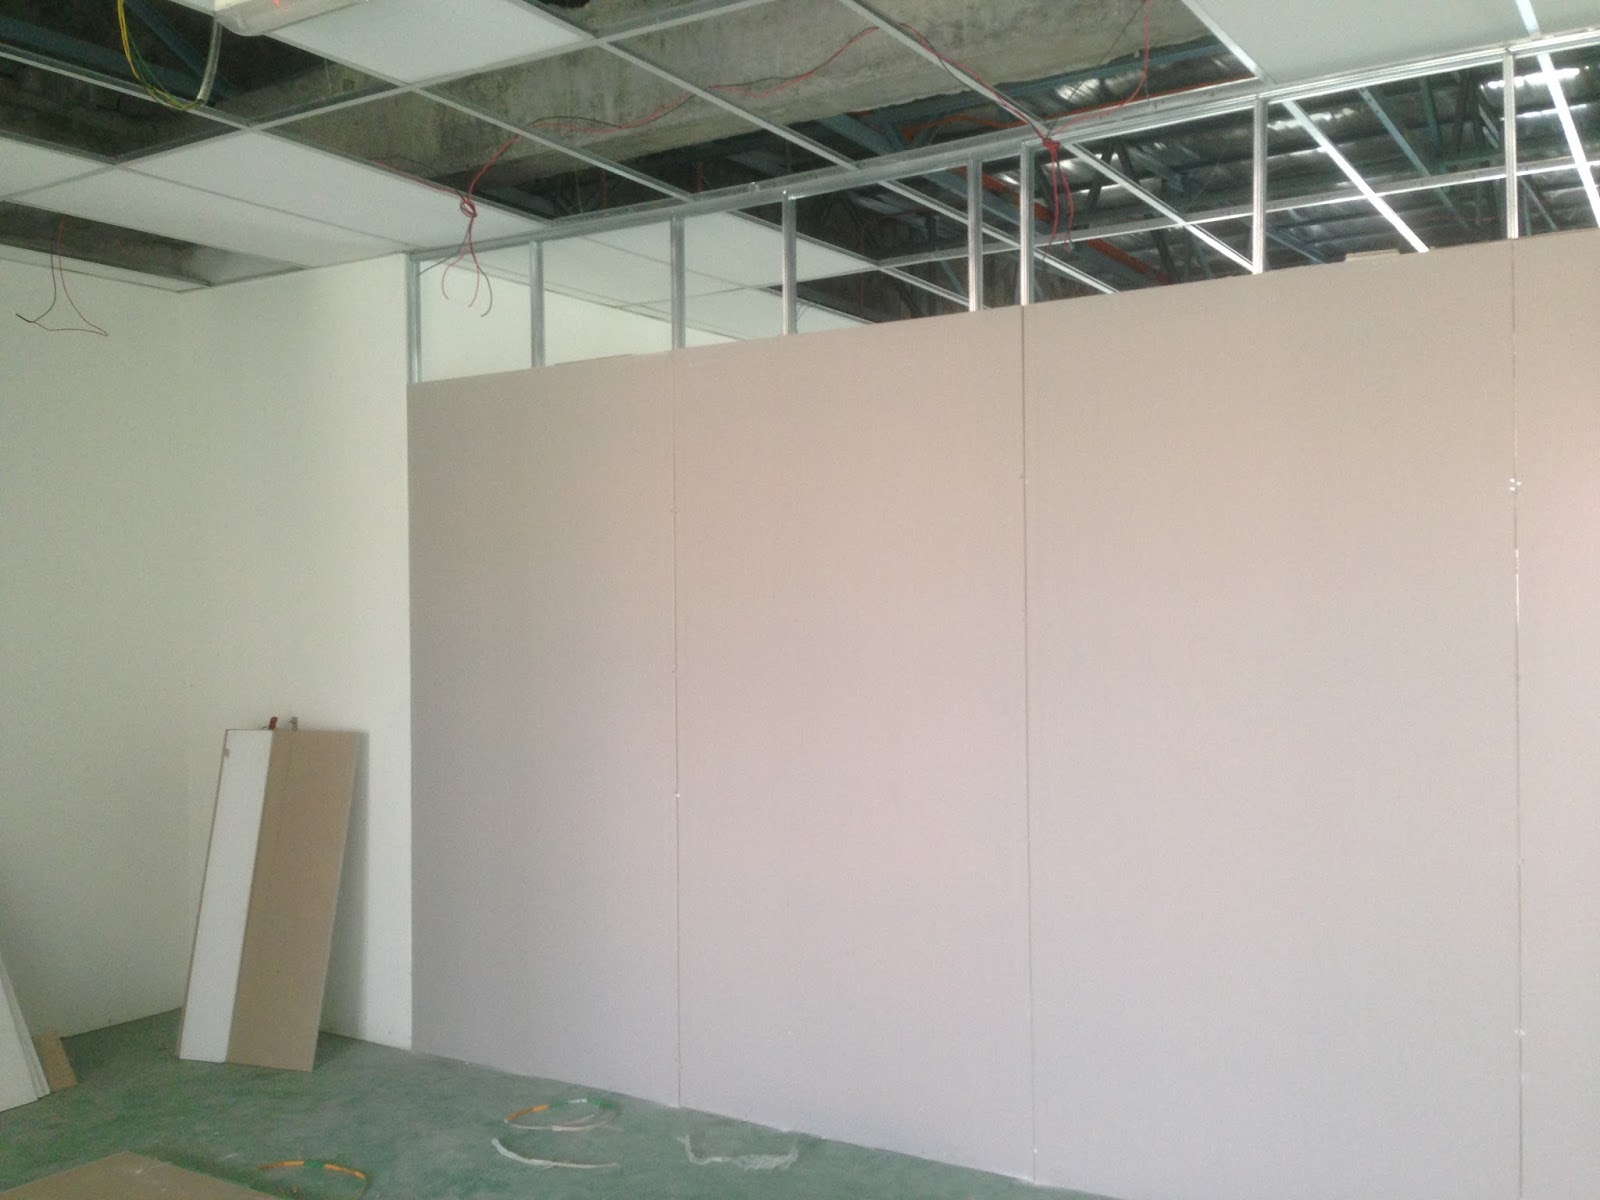 KDA Renovation: Pemasangan Gypsum Board - Partition Wall